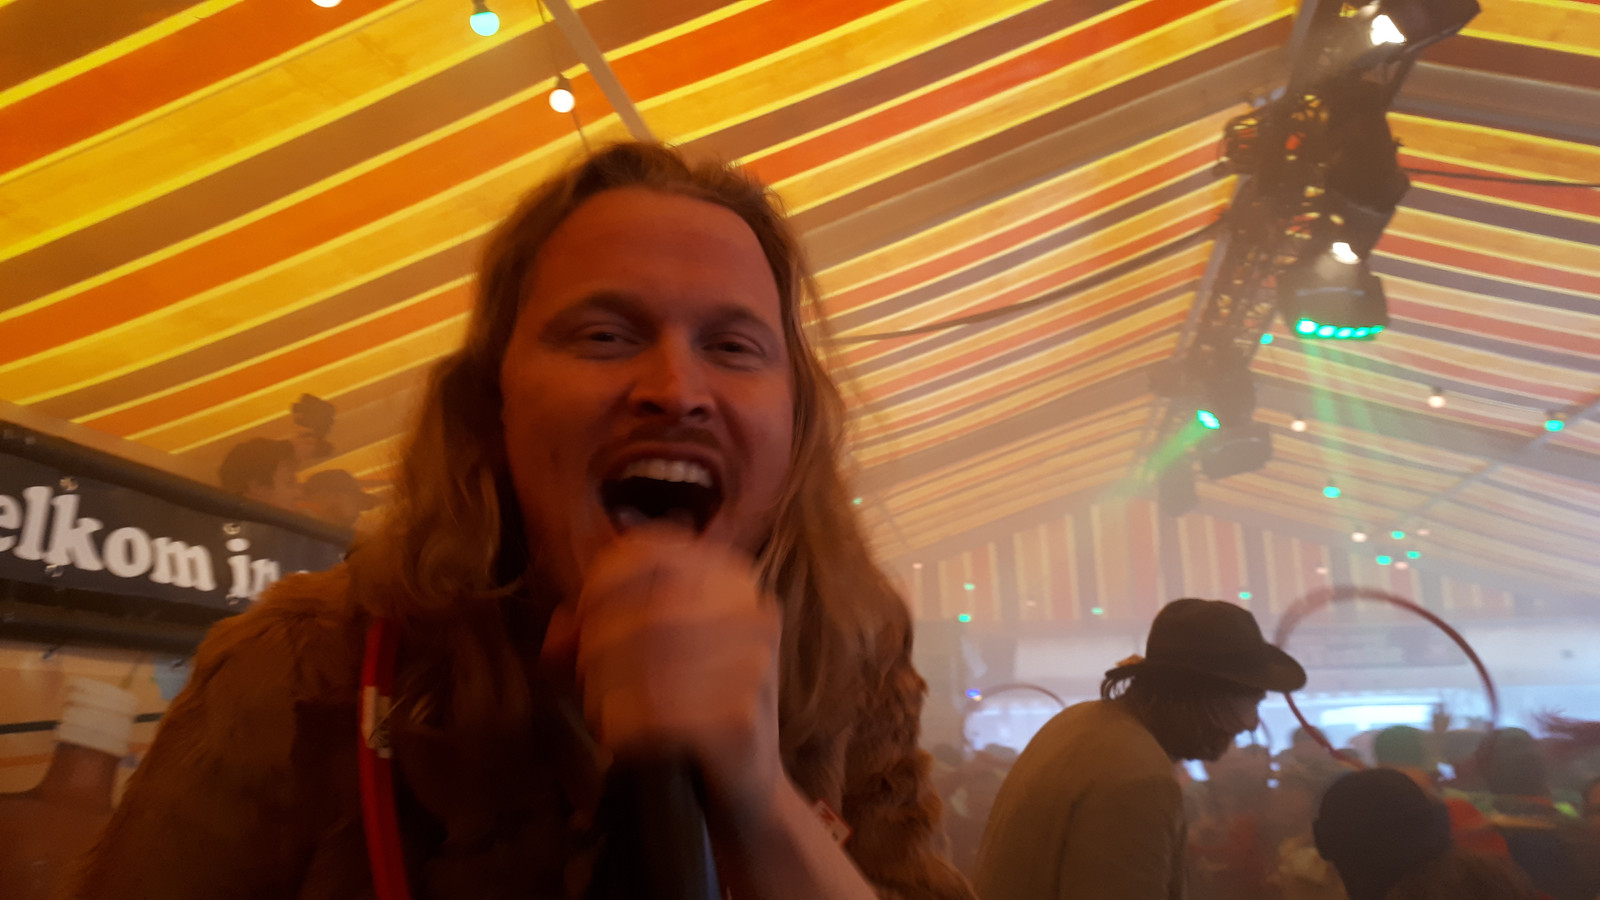 Sander Ottens van de Kapotte Kachels tijdens hun optreden in Tilburg, carnaval 2020.